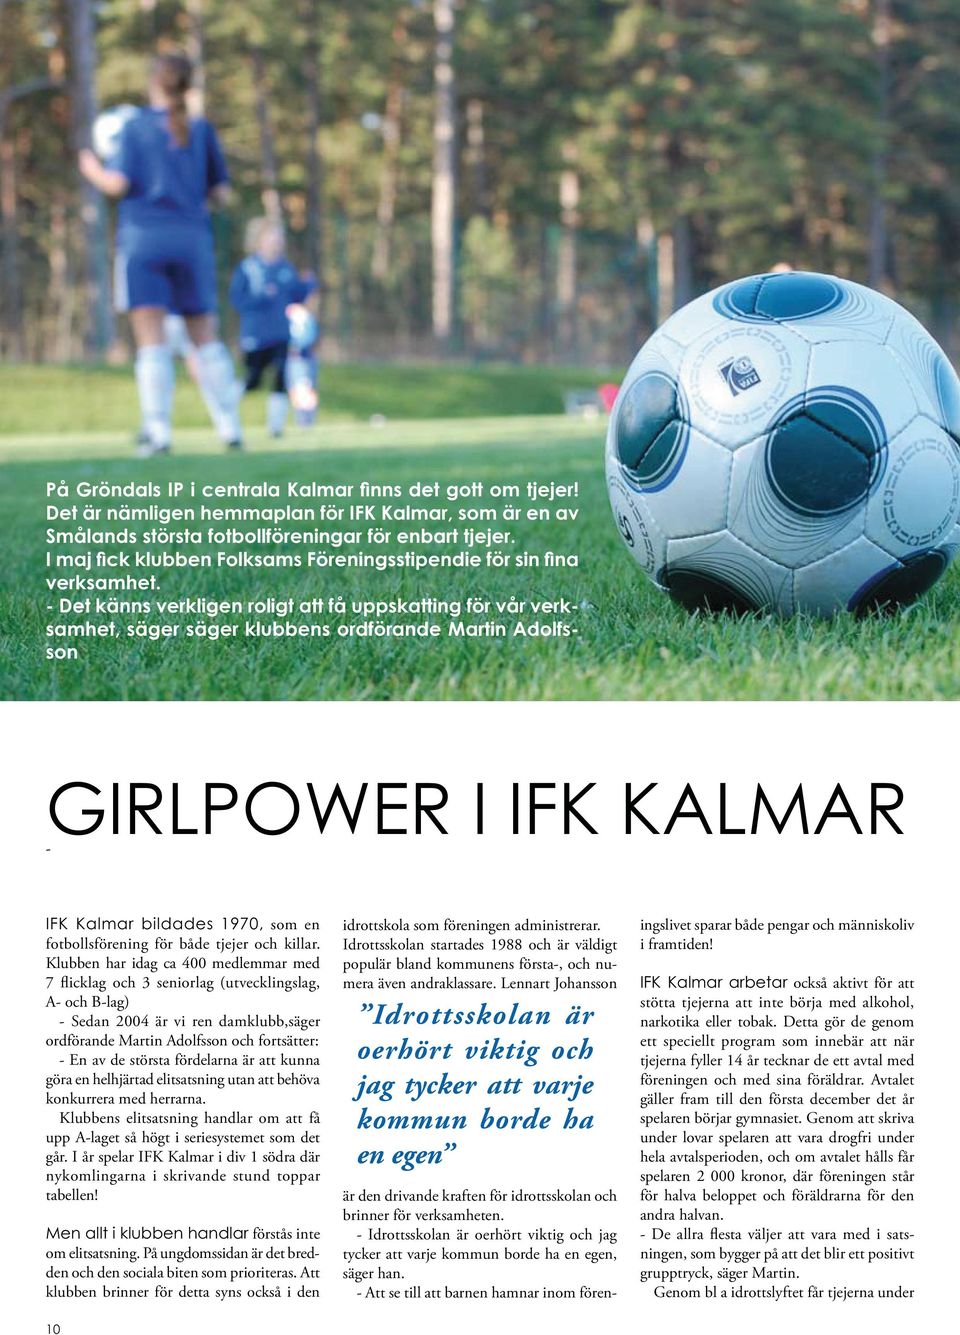 - Det känns verkligen roligt att få uppskatting för vår verksamhet, säger säger klubbens ordförande Martin Adolfsson GIRLPOWER I IFK KALMAR - IFK Kalmar bildades 1970, som en fotbollsförening för